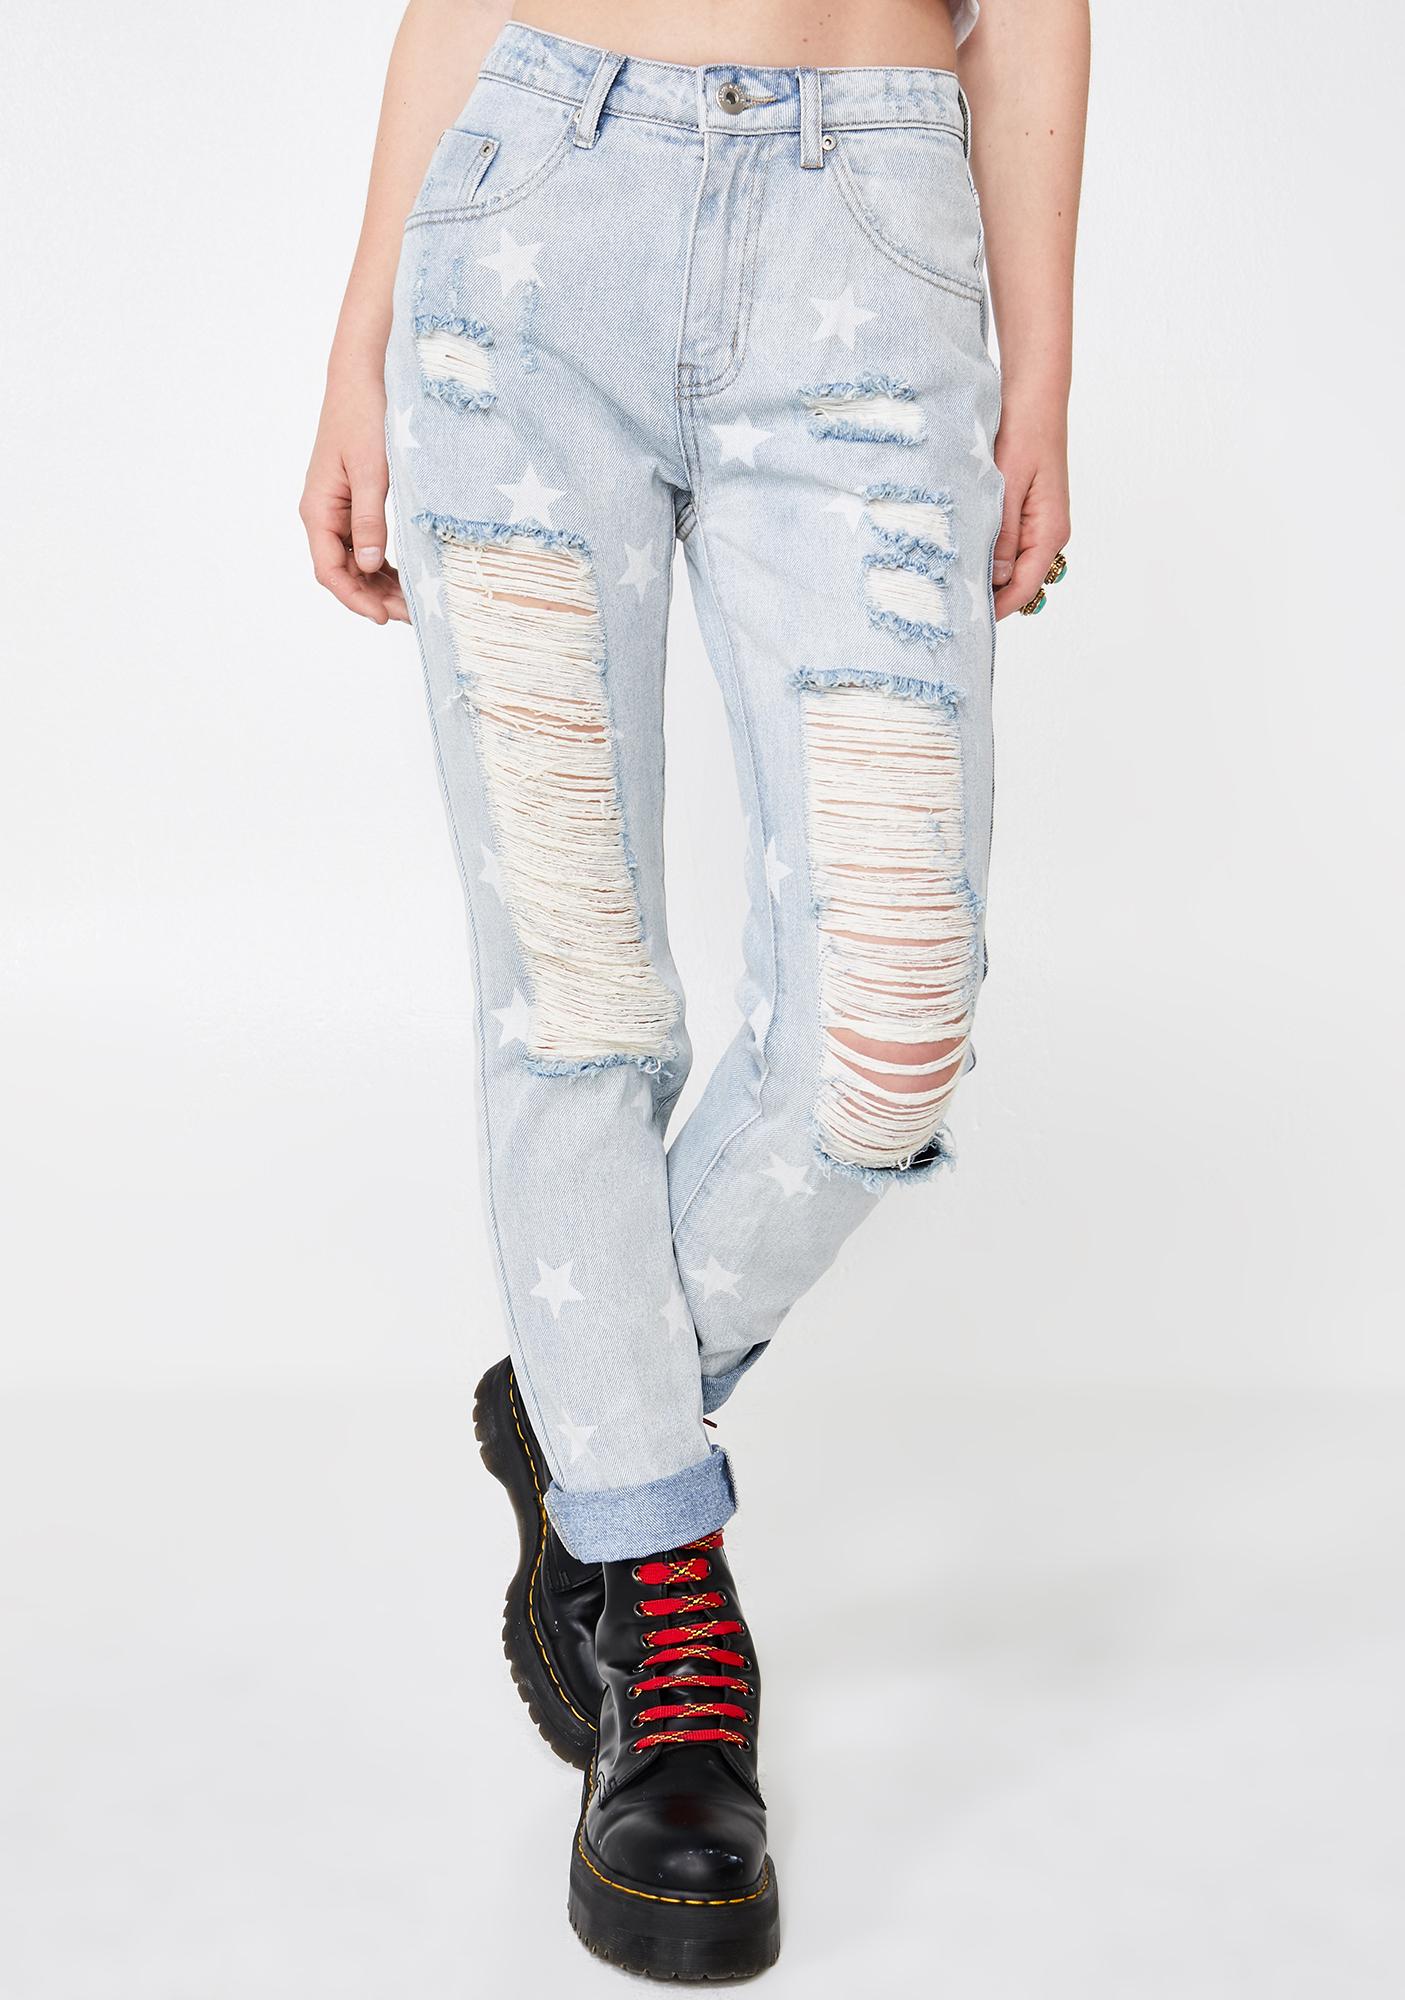 Denim Jeans Distressed Star Print | Dolls Kill